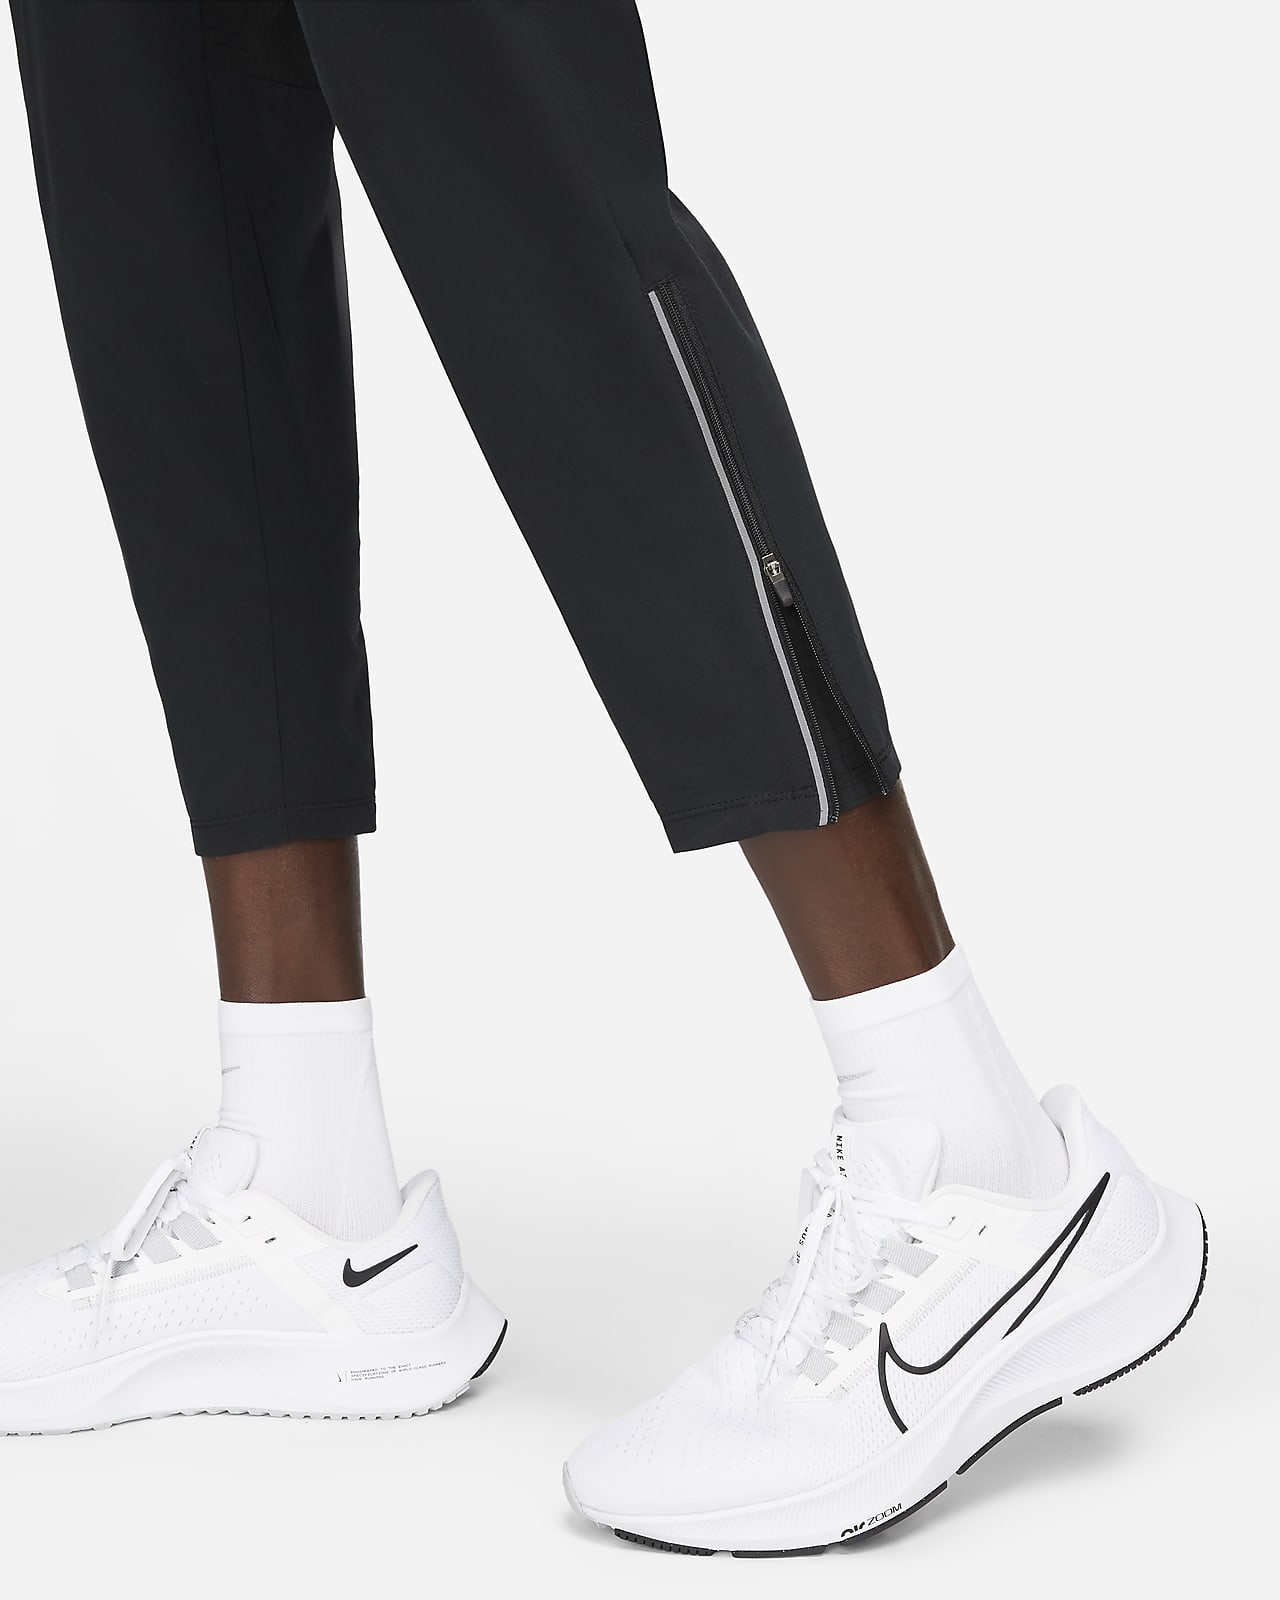 Nike Dry Phenom Running Pant Men's Workout